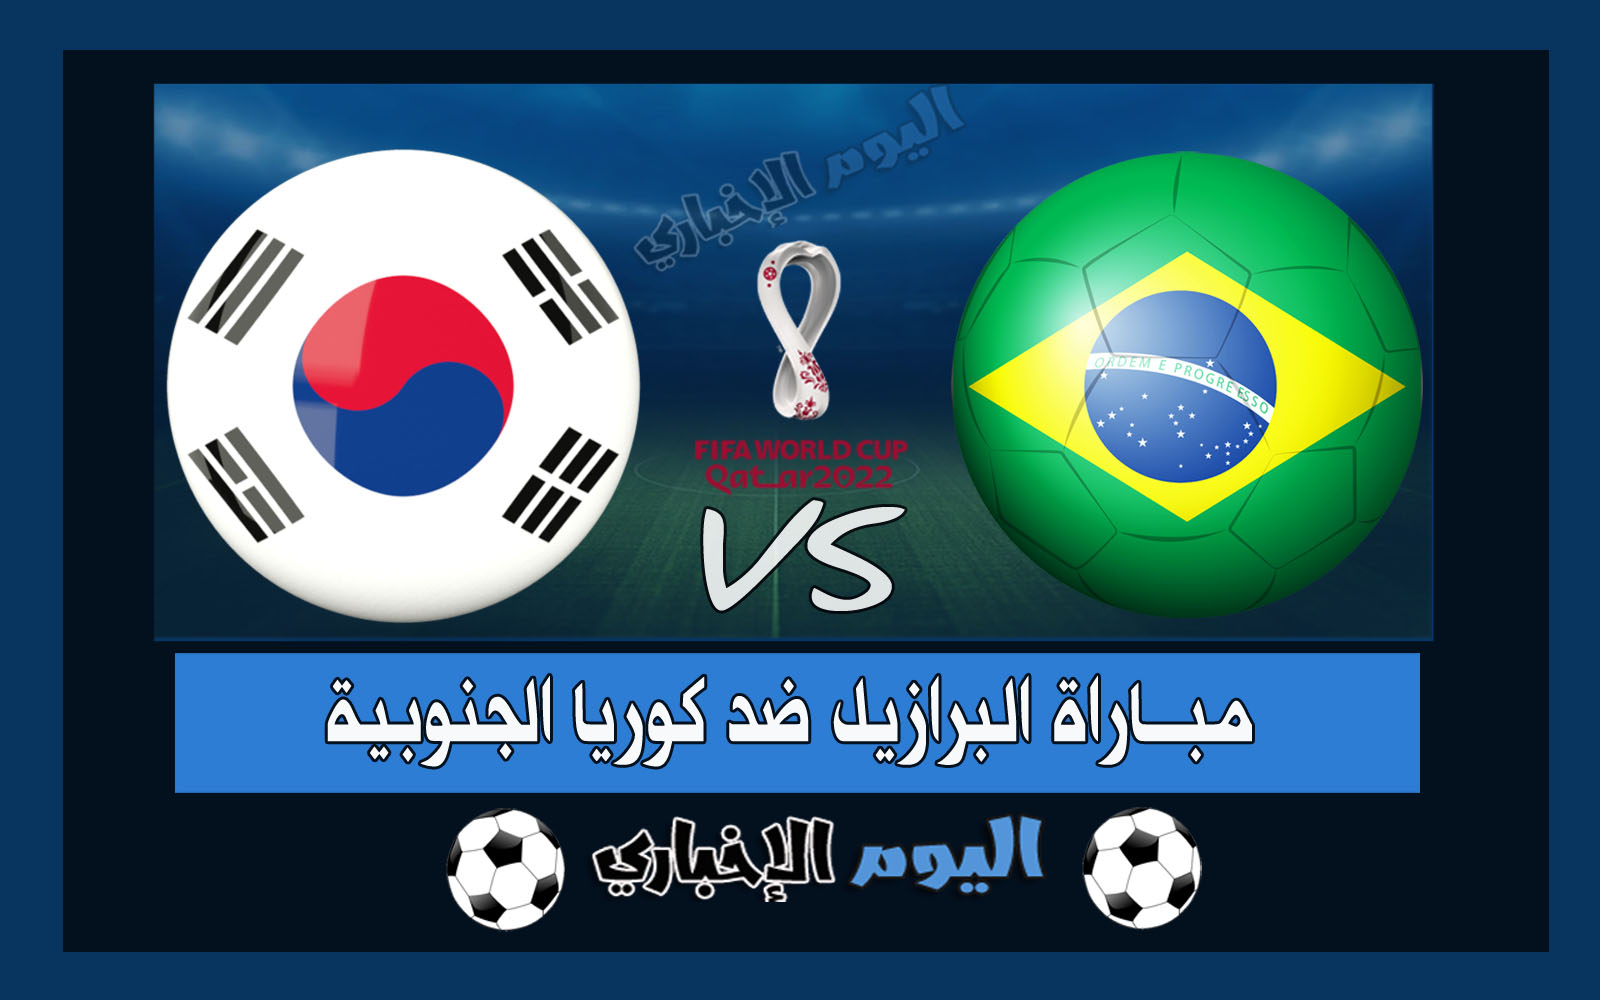 “السيليساو بالرباعية” نتيجة اهداف مباراة البرازيل وكوريا الجنوبية 4-1 ملخص اليوم في كأس العالم 2022